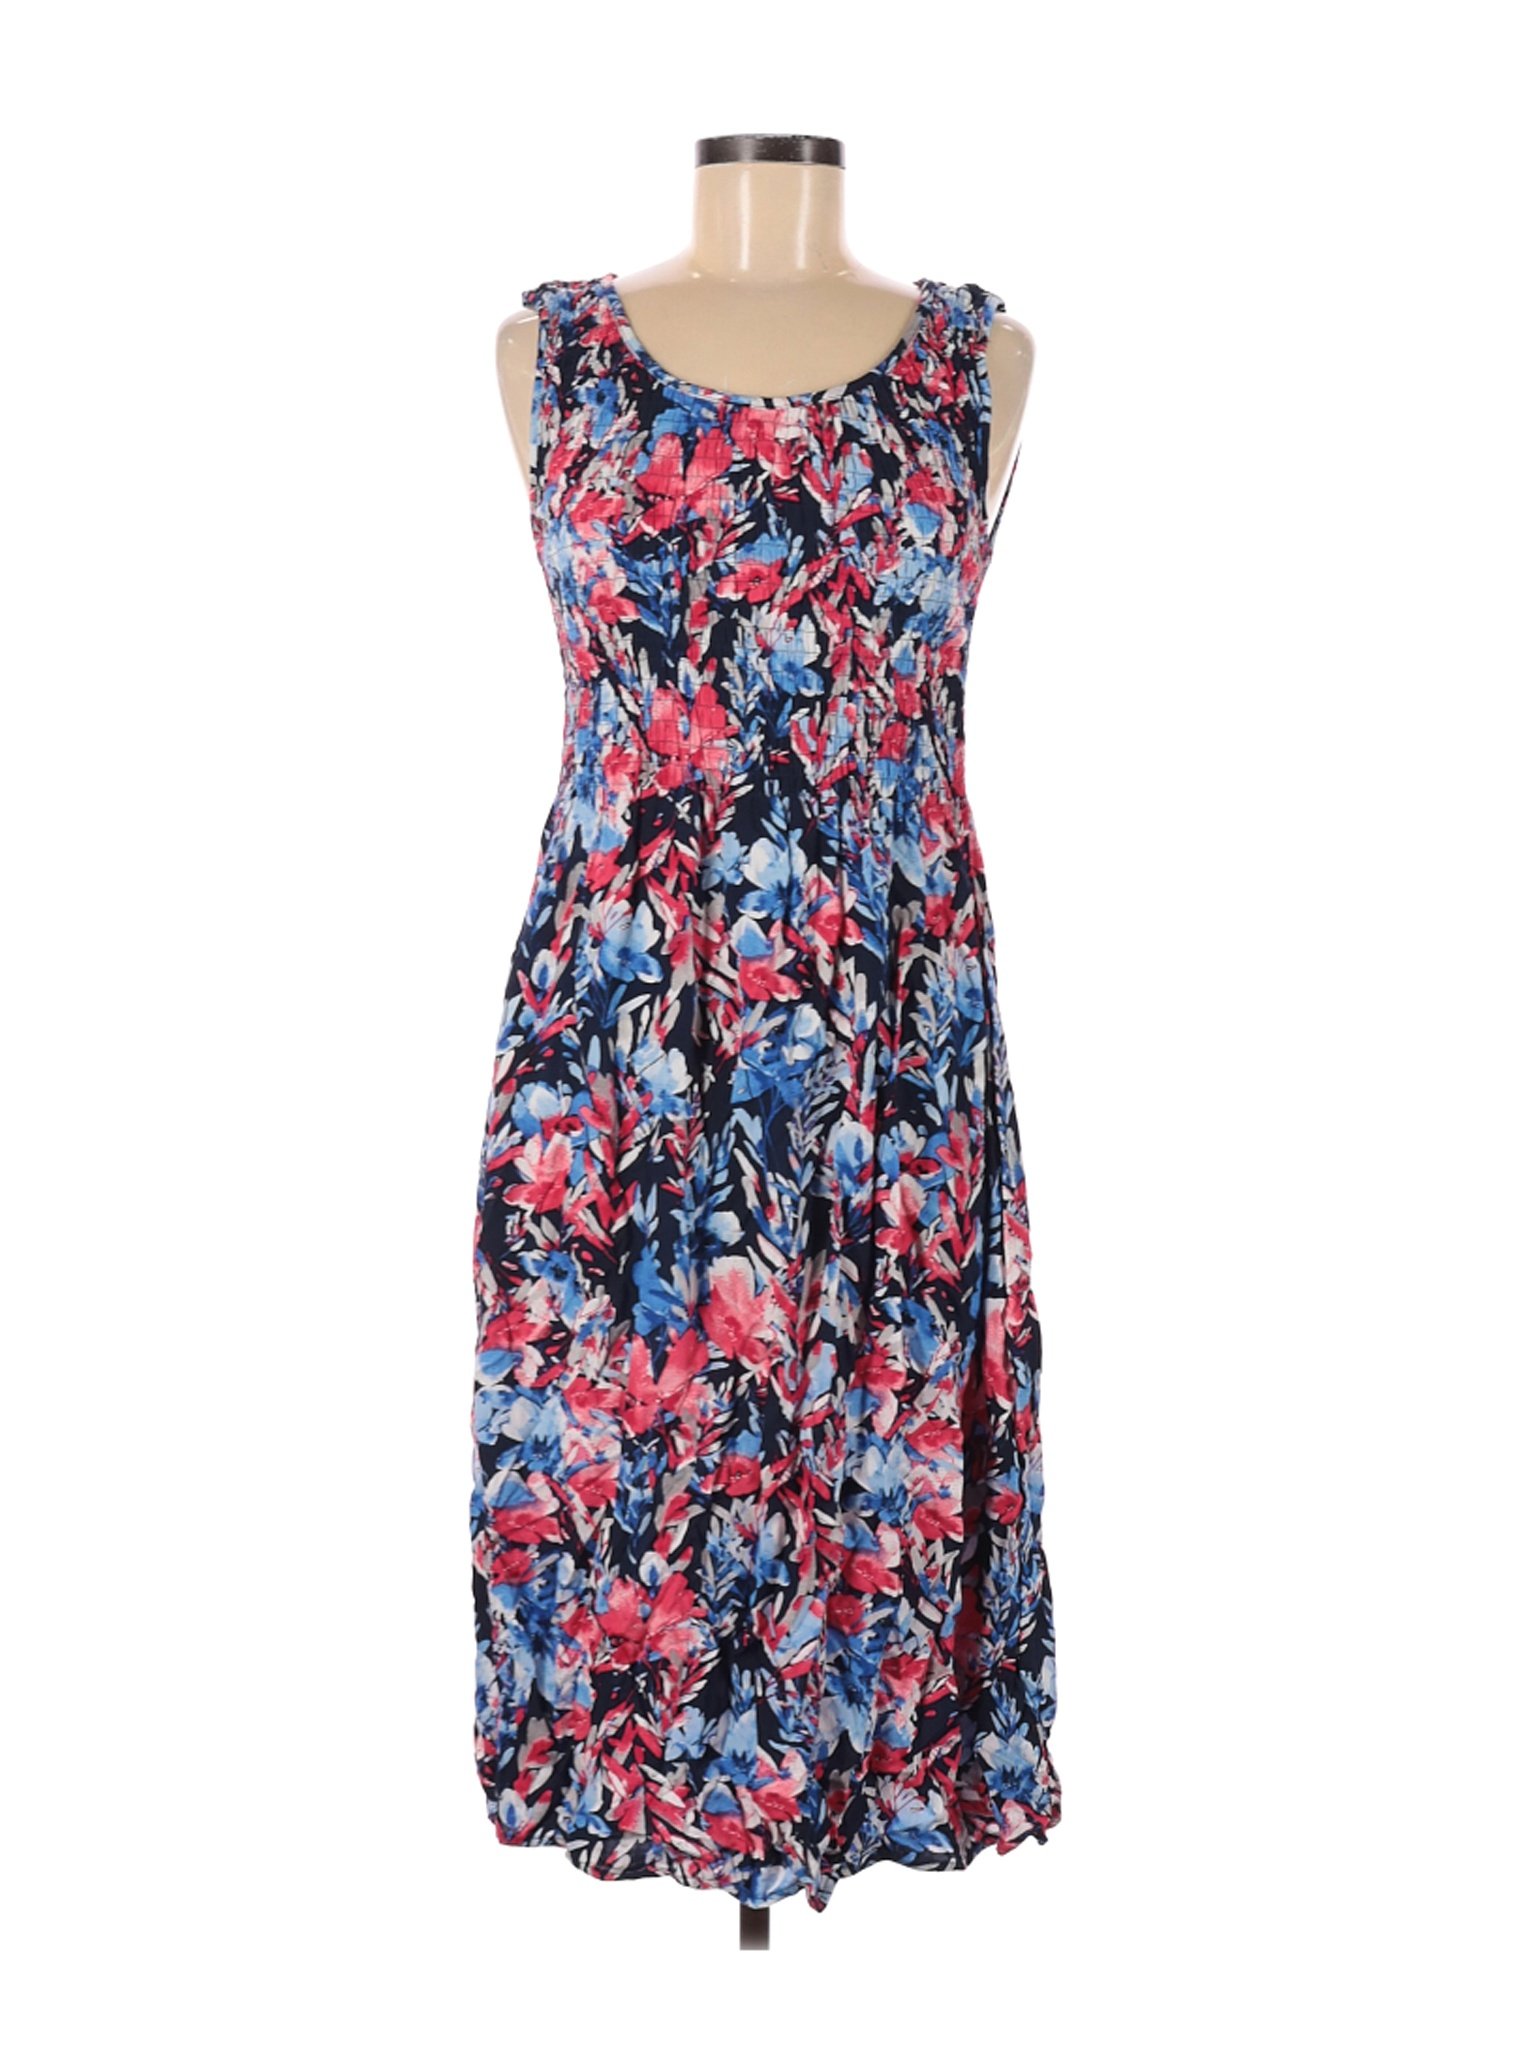 Croft & Barrow Women Blue Casual Dress S | eBay